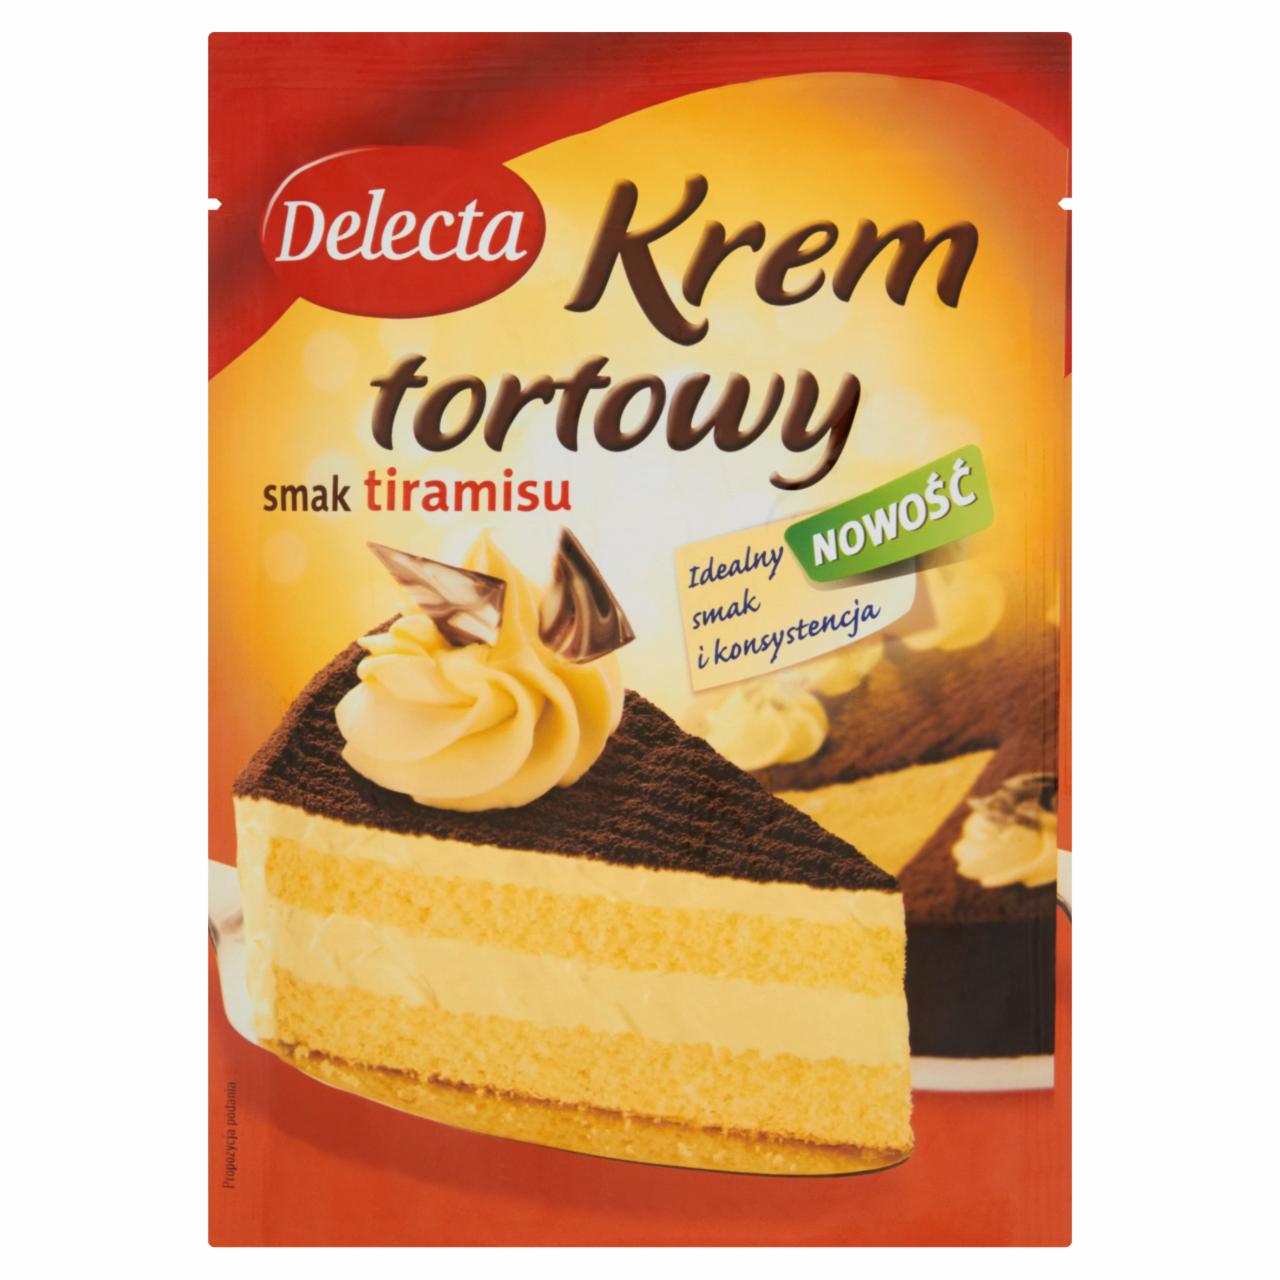 Zdjęcia - Delecta Krem tortowy smak tiramisu 110 g